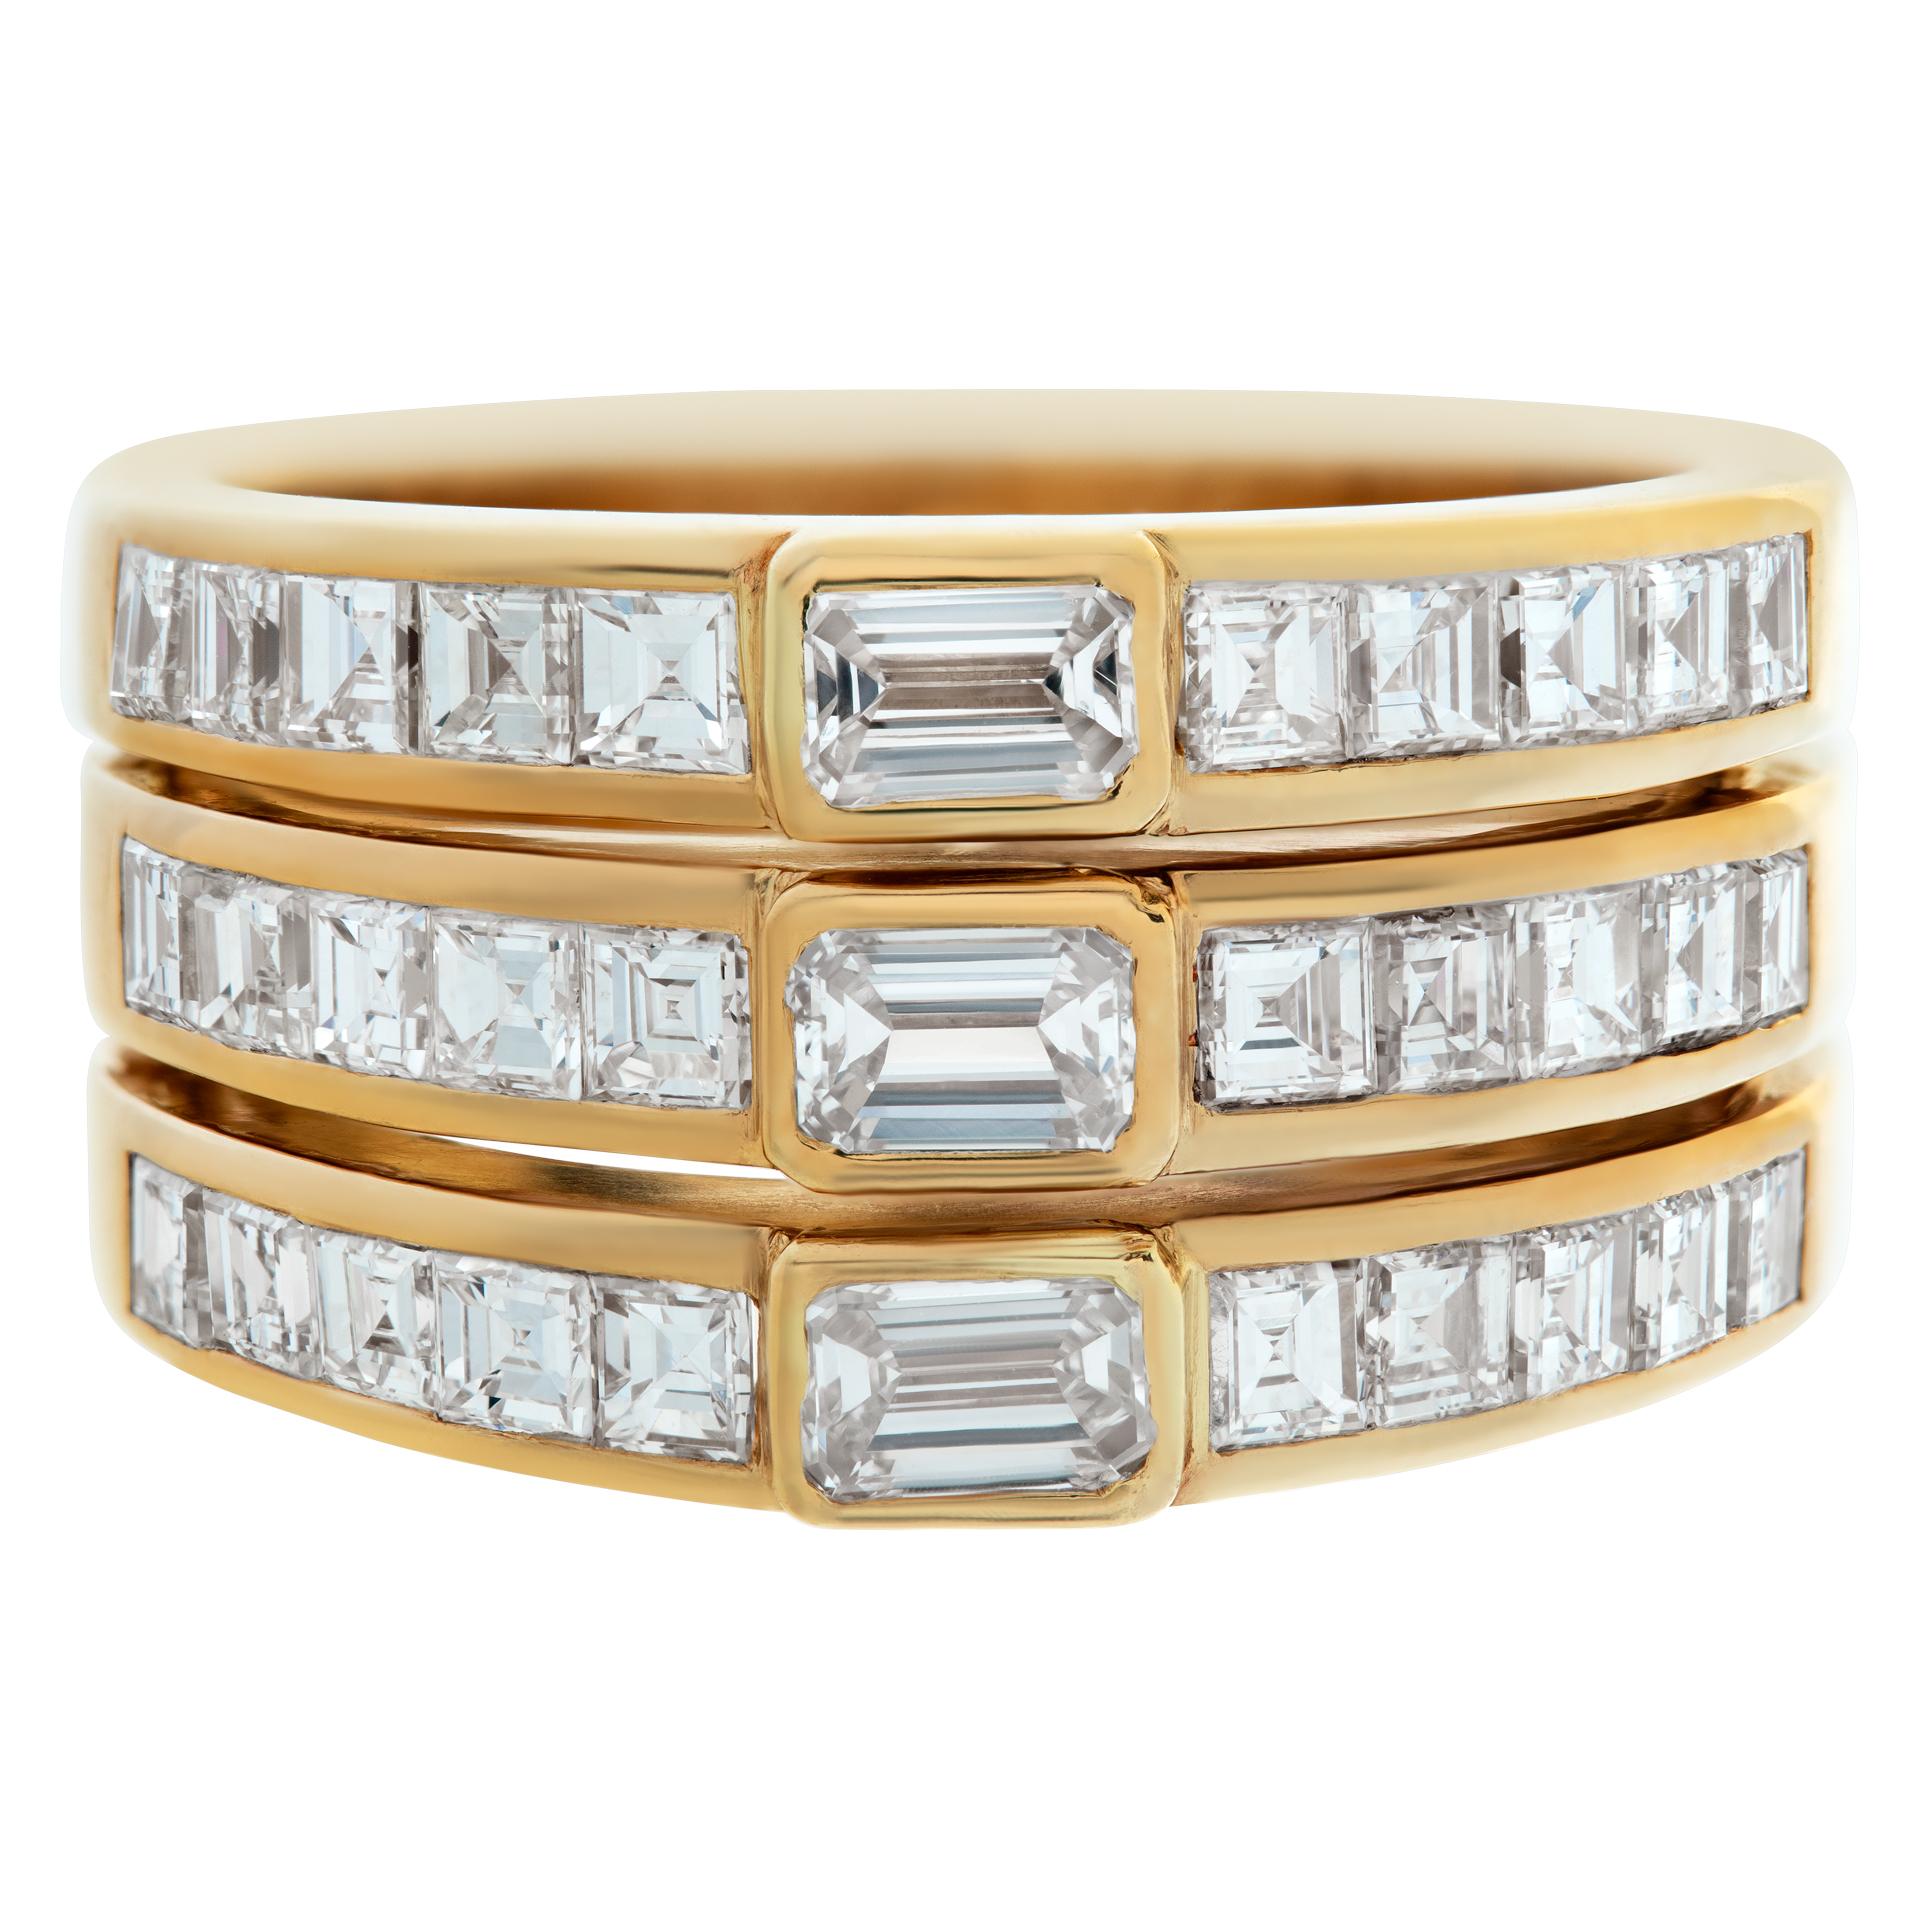 Drei gestapelte Diamantringe aus 18 Karat Gelbgold mit ca. 0,50 Karat Diamanten im Smaragdschliff (Farbe H-I, Reinheit VS) und 2,25 Karat Diamanten im Asscherschliff (Farbe G-H, Reinheit VS). Ringgröße 5.75Dieser Diamantring ist derzeit Größe 5.75